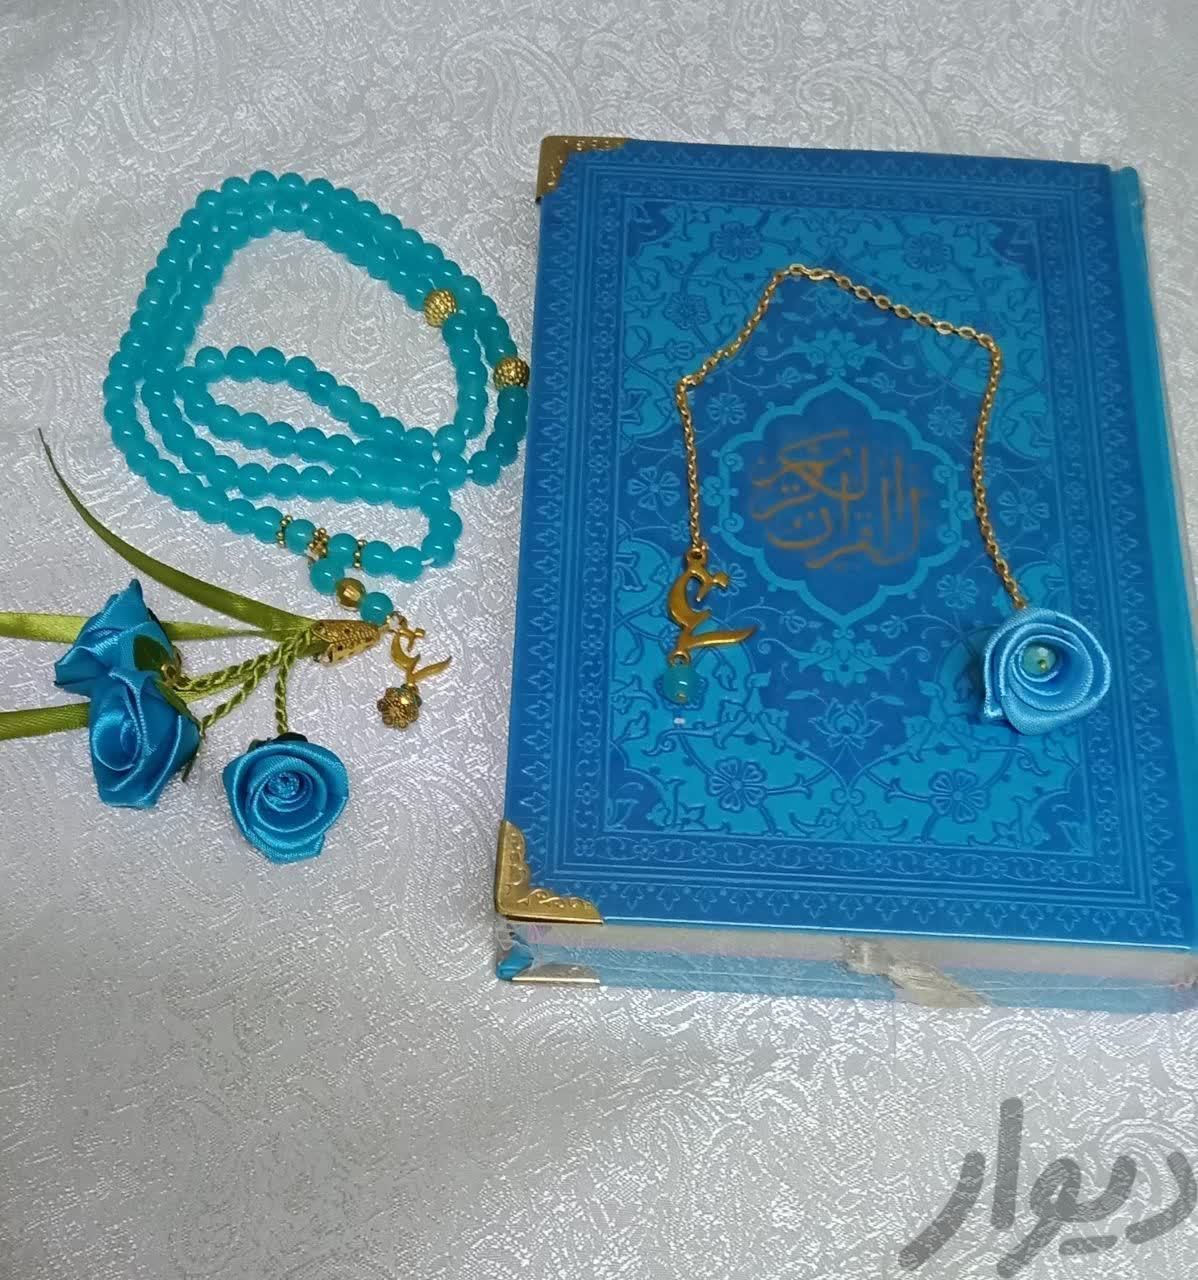 قرآن|کتاب و مجله مذهبی|اهواز, نادری|دیوار